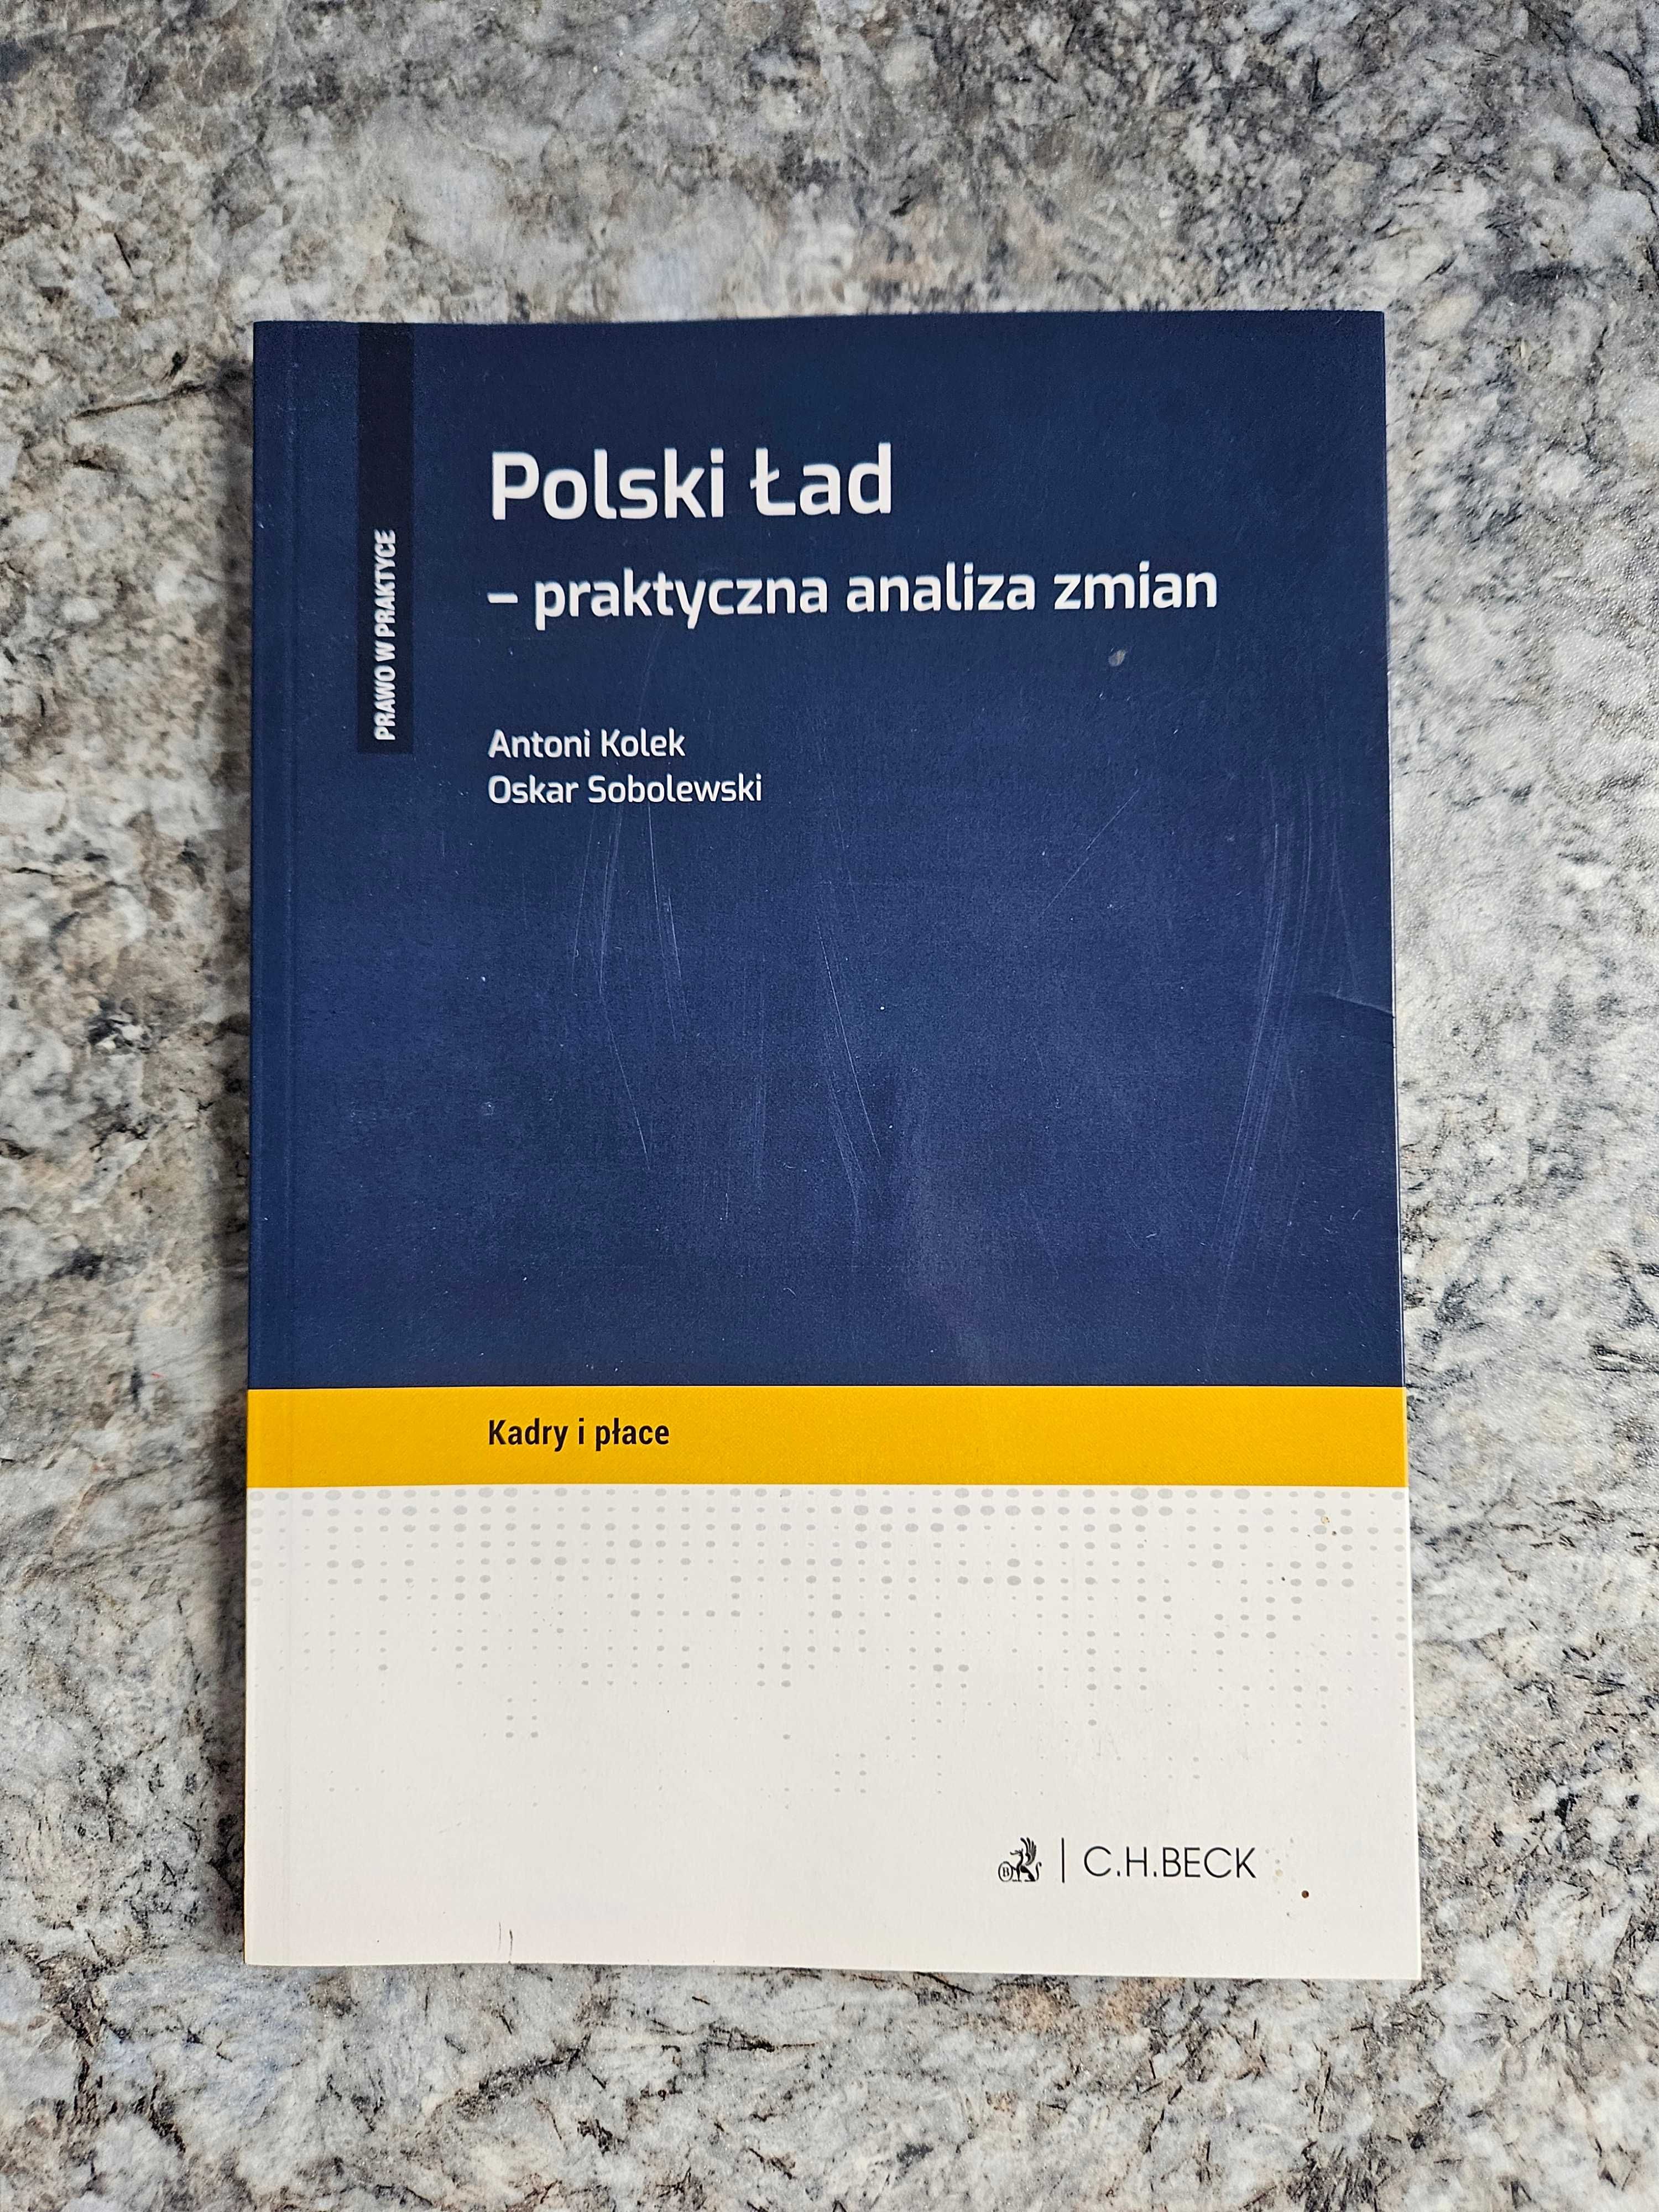 Polski Ład - praktyczna analiza zmian Kolek, Sobolewski